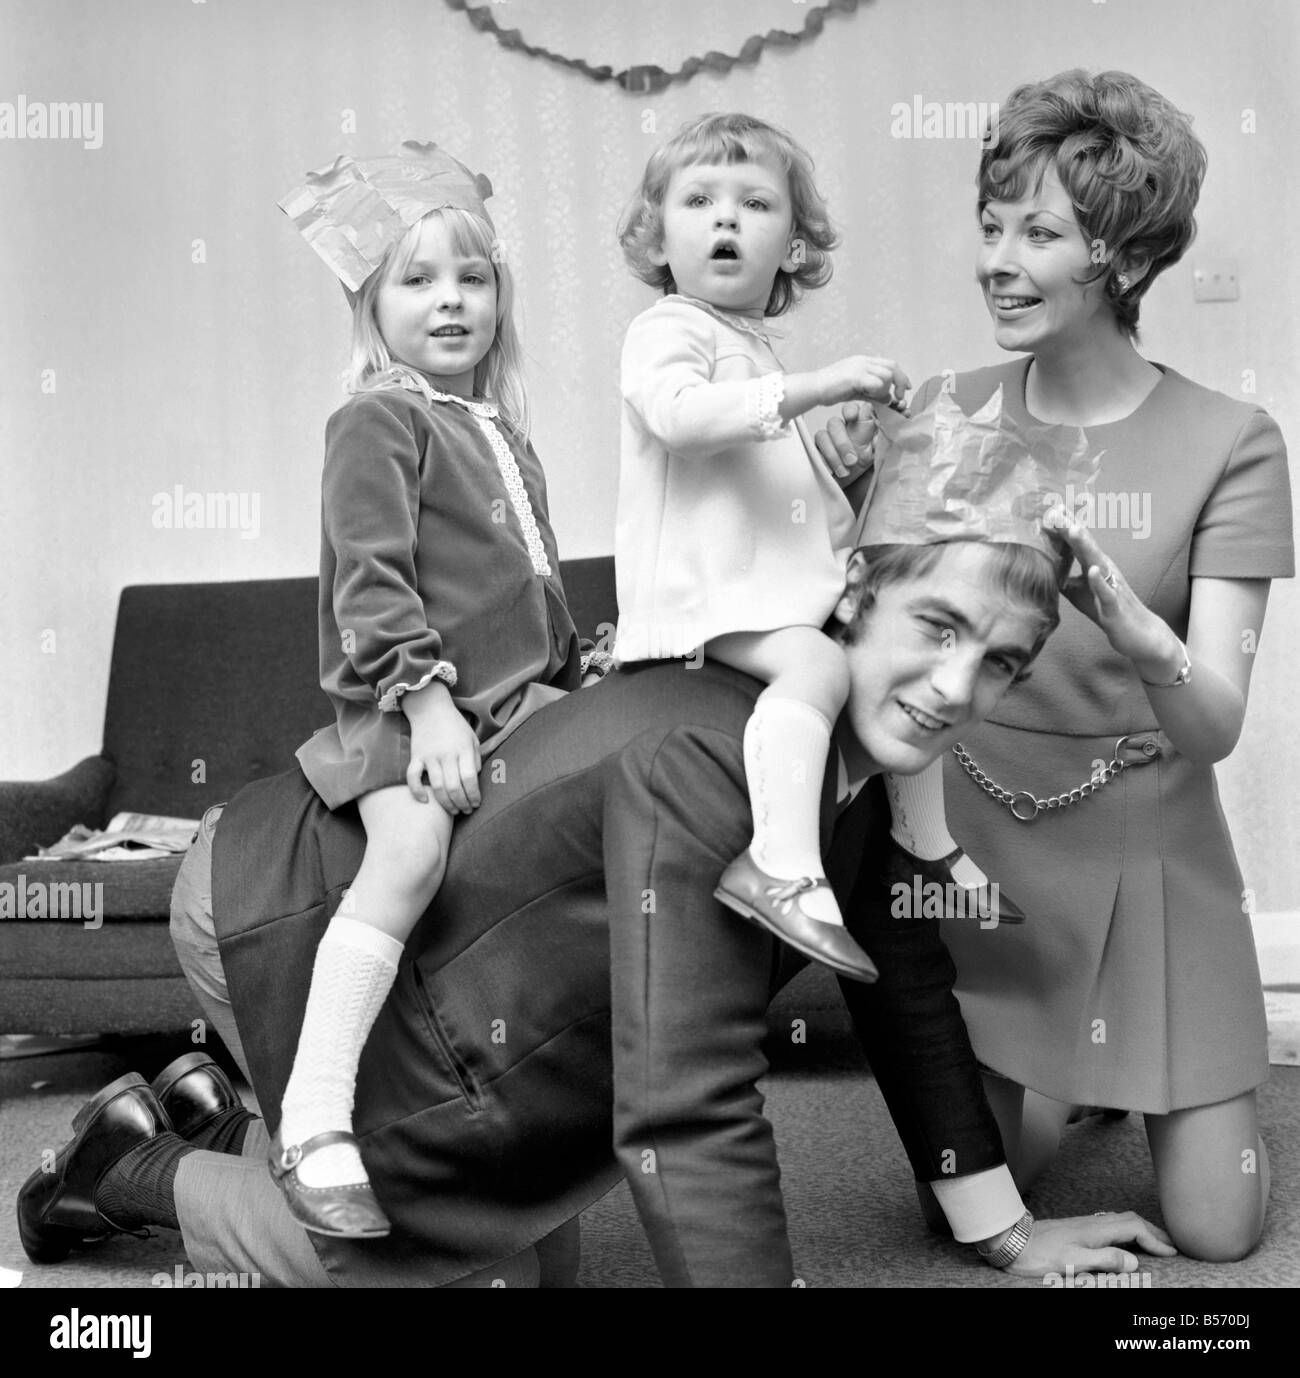 Sport: Fußball: Ron Davies Southampton Mittelstürmer, feiert Weihnachten früh. Sylvia Ron mit seiner Frau und Töchter, Karen (vier) und Nicola (19 Monate). Dezember 1969 Z12356 Stockfoto